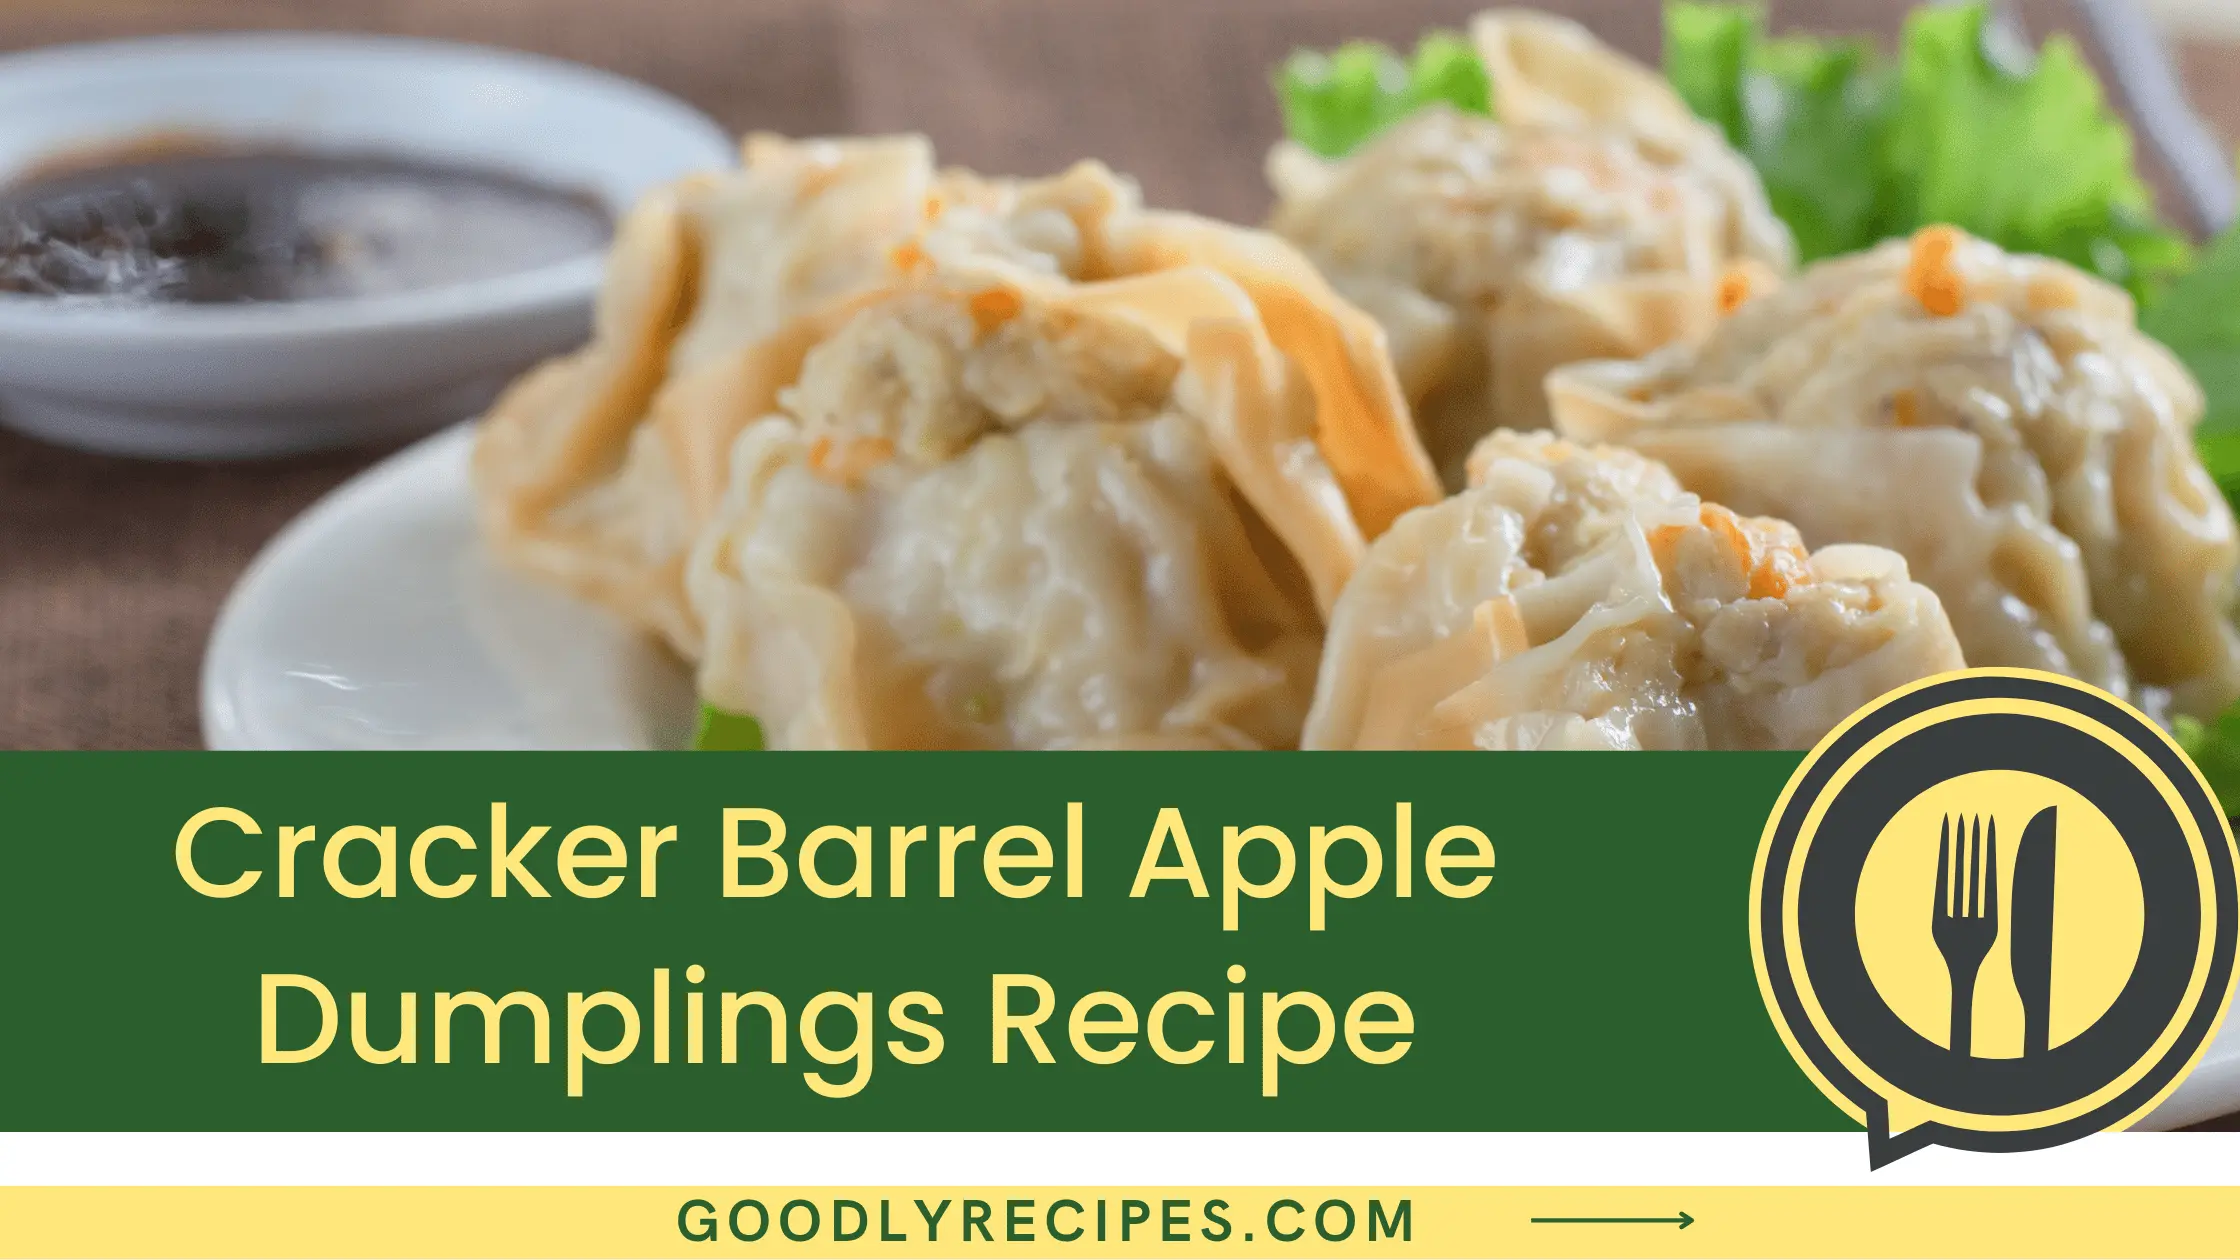 What is Cracker Barrel Apple Dumplings?